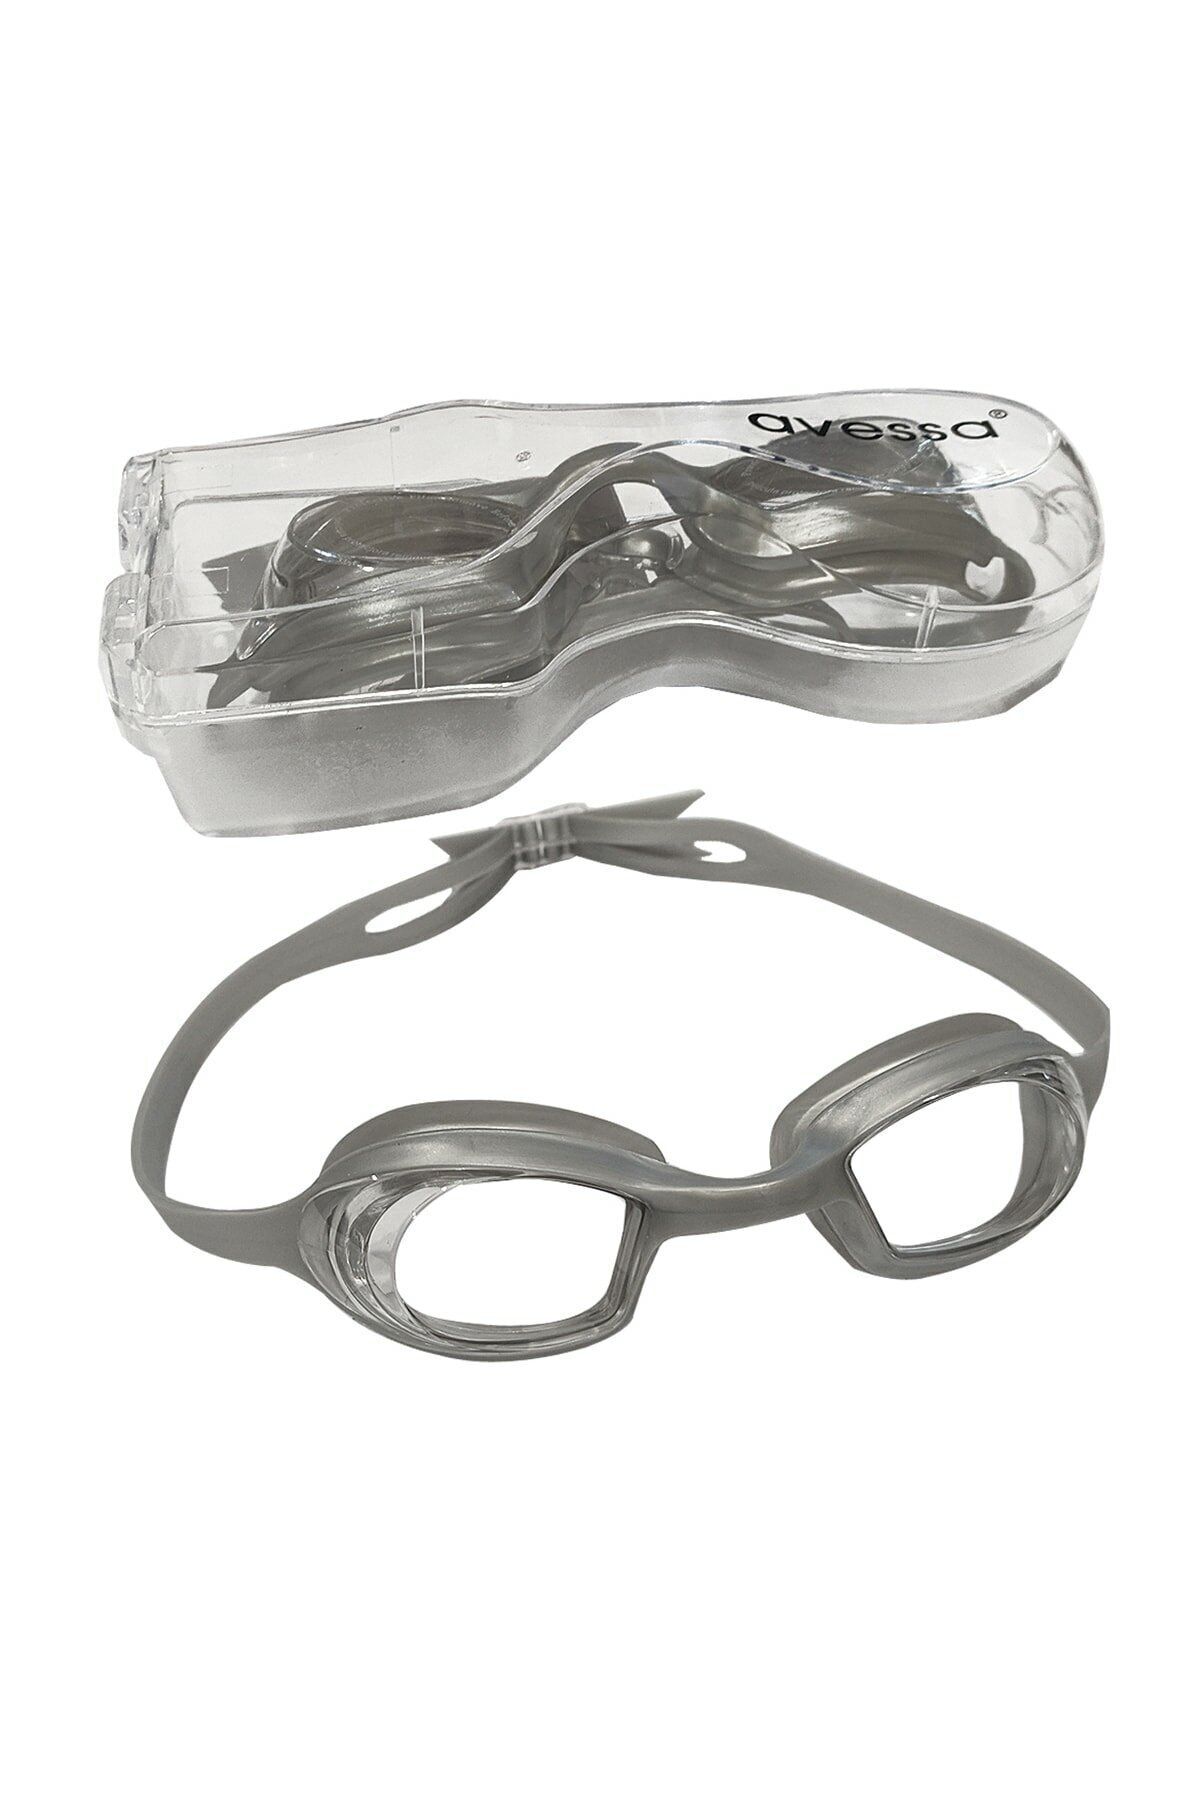 Avessa Yetişkin Yüzücü Gözlüğü - Deniz Gözlüğü Havuz Gözlüğü Kadın Erkek Büyük Gözlük